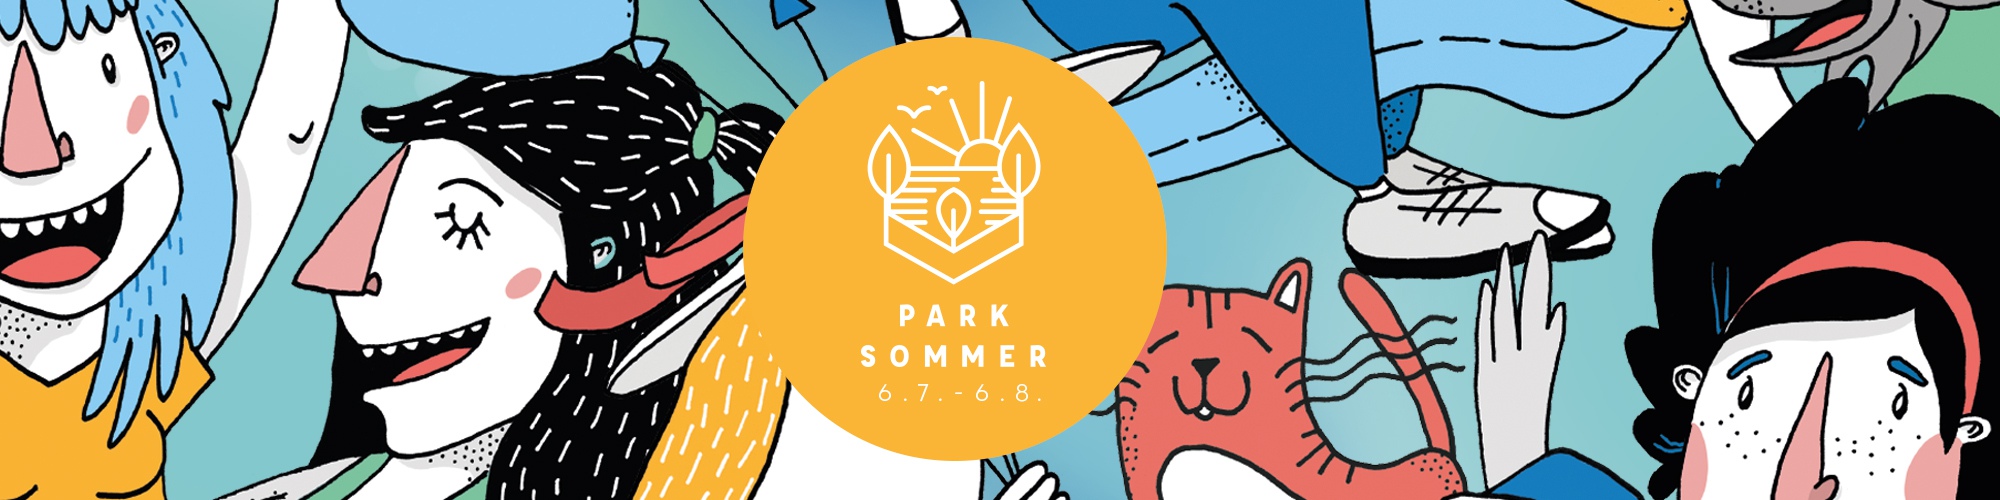 Parksommer - Das Kultur- und Kunstfestival in Chemnitz